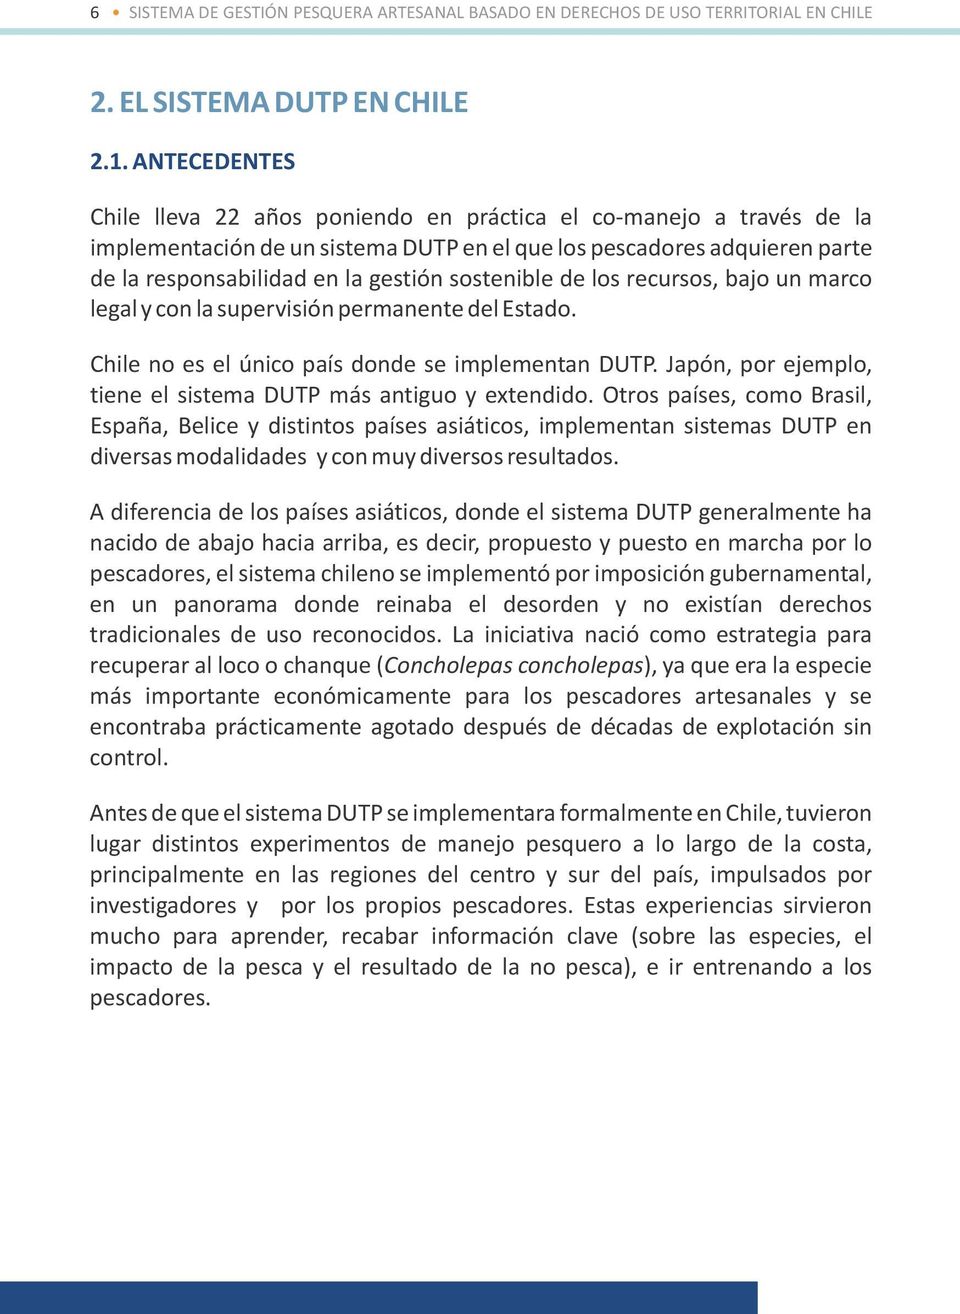 sostenible de los recursos, bajo un marco legal y con la supervisión permanente del Estado. Chile no es el único país donde se implementan DUTP.